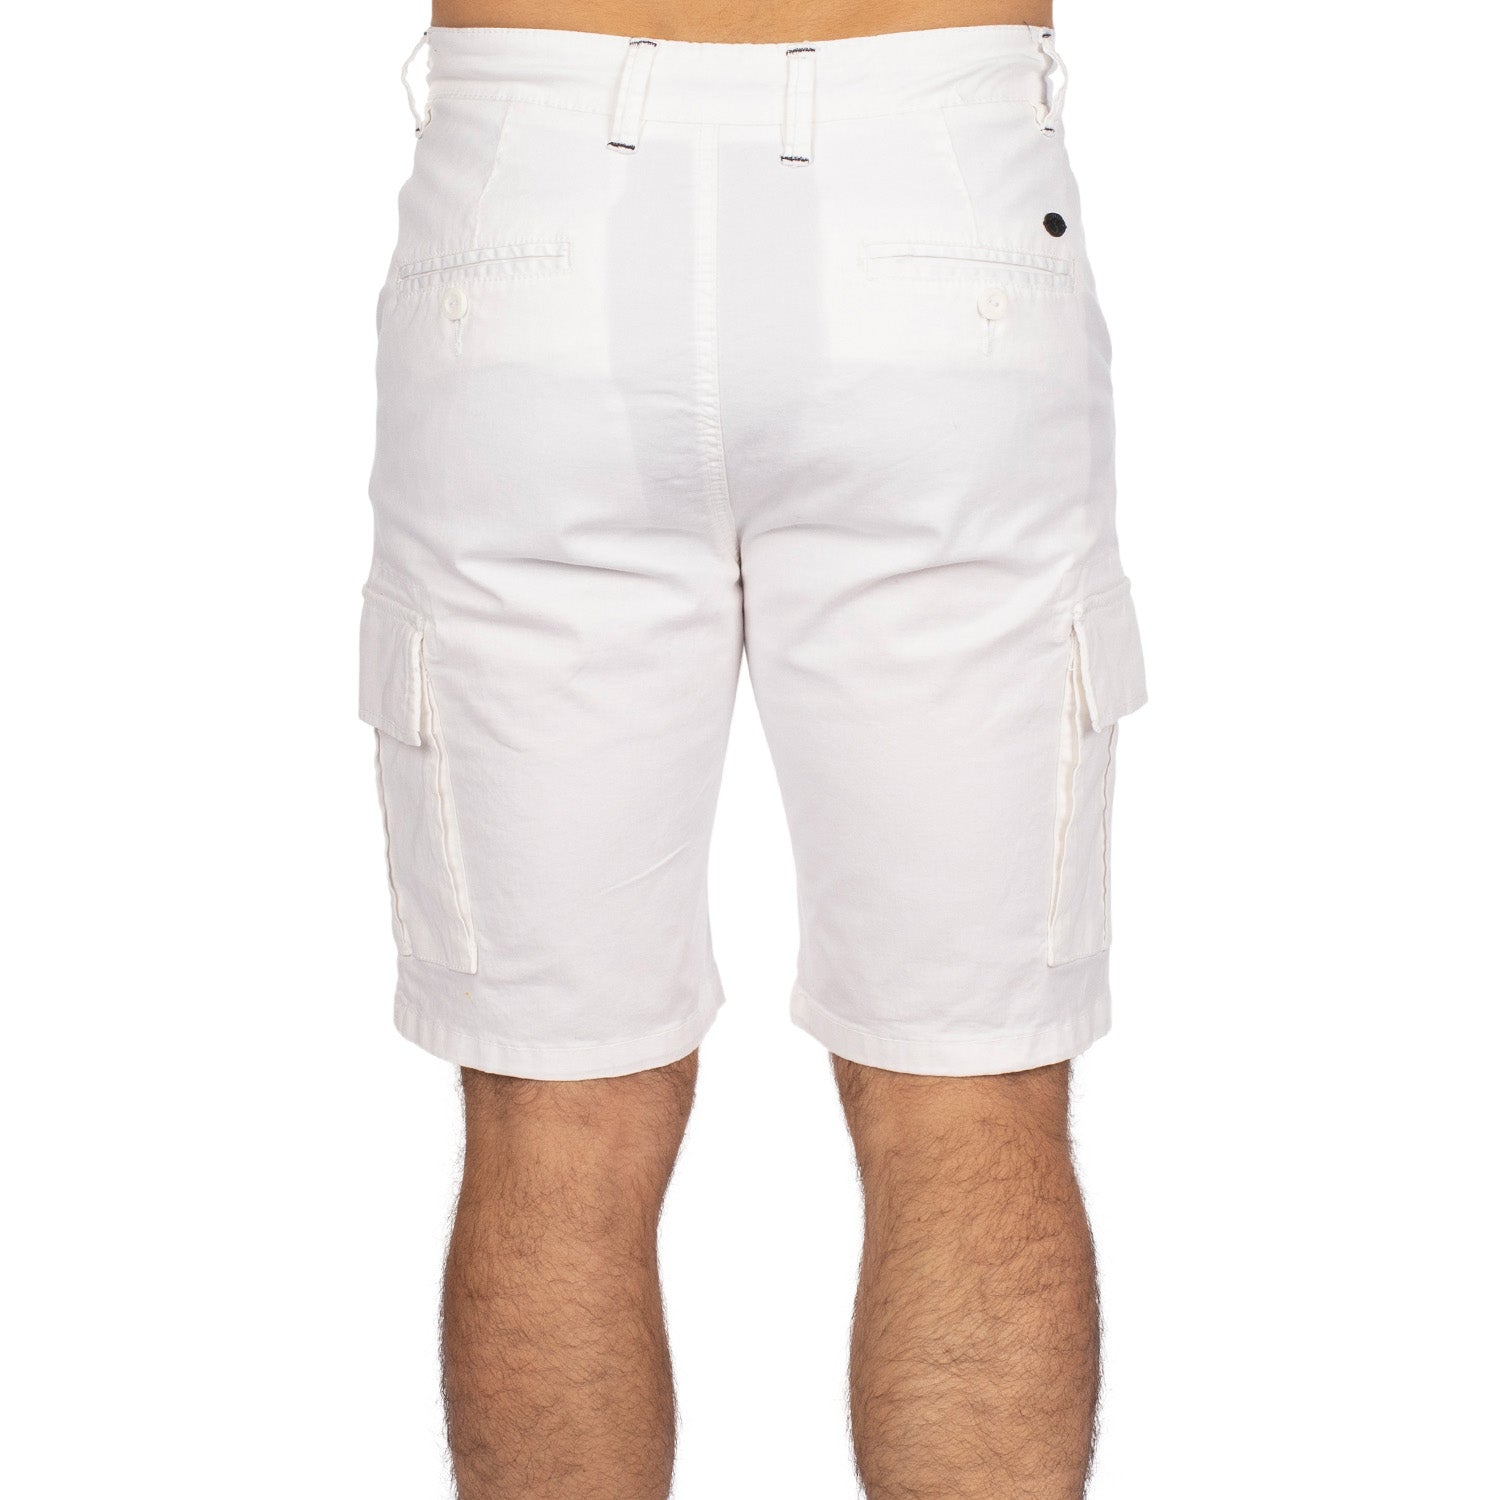 Bermuda cargo poches Blanc  - vu de dos - Shilton